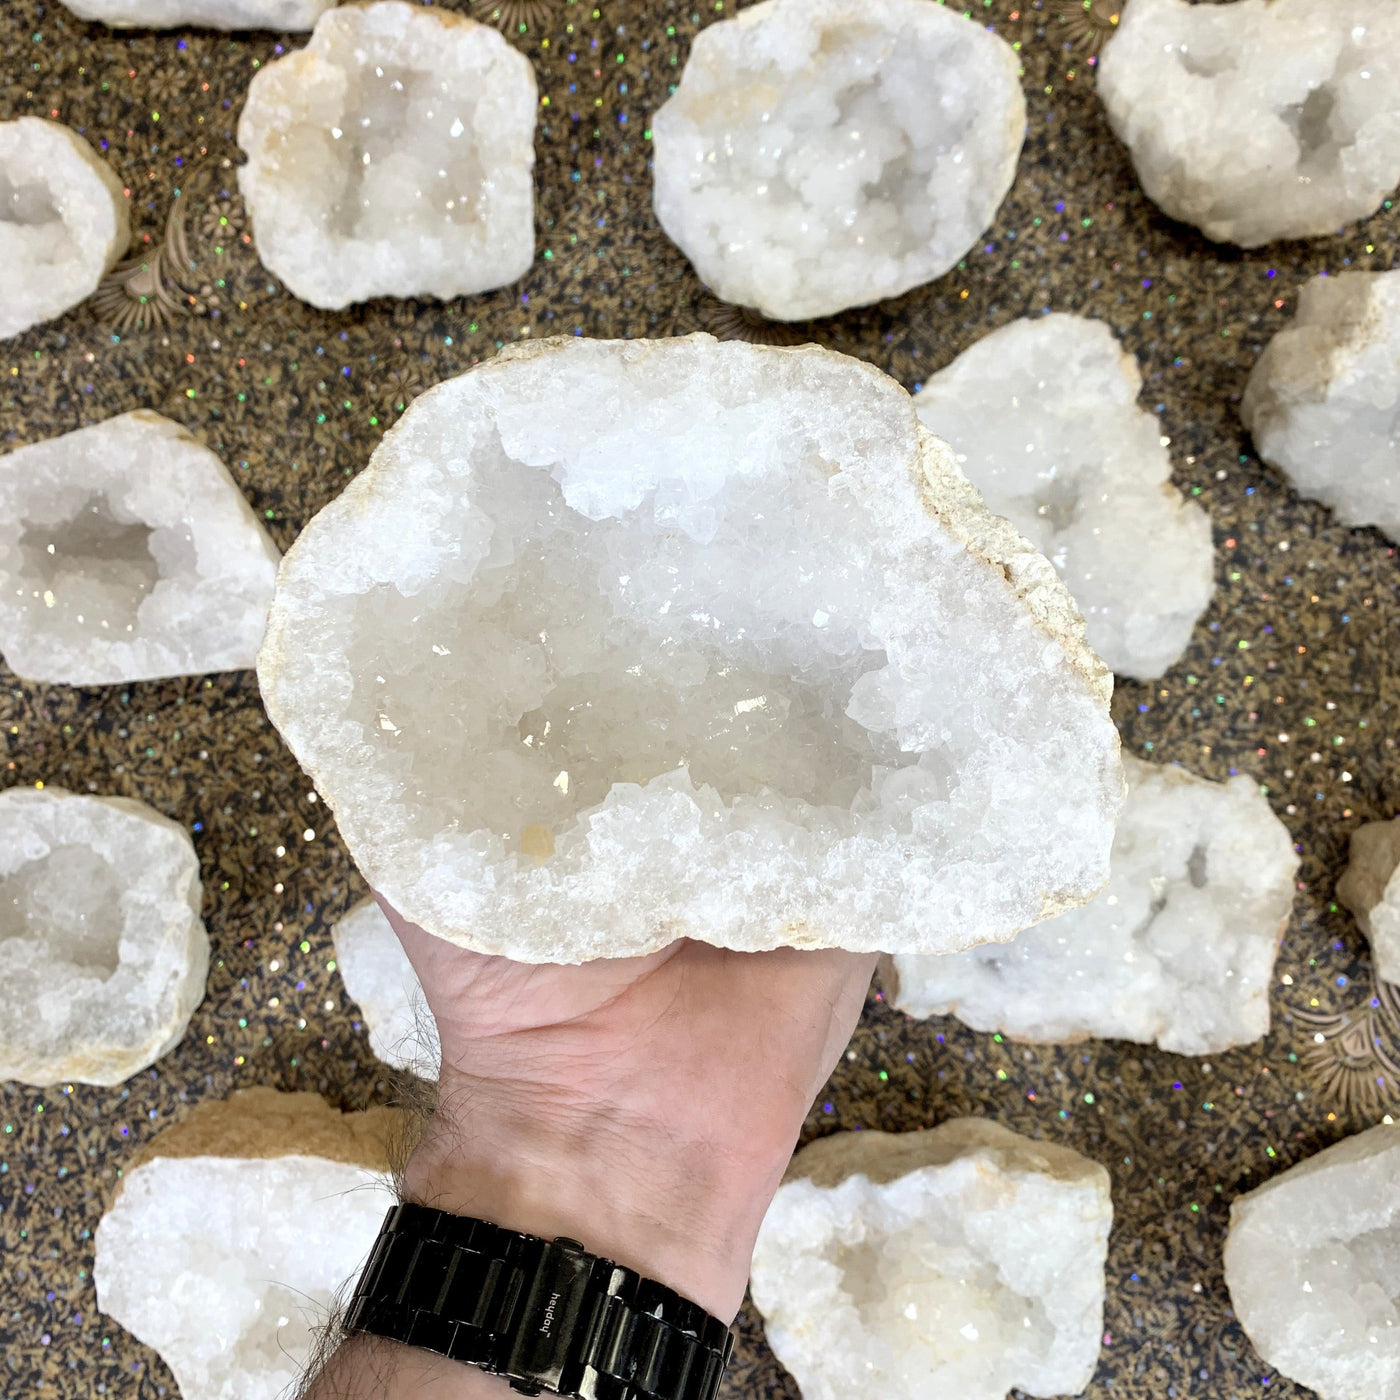 White Quartz Druzy Half Geode  in hand showing unique formation from each geode